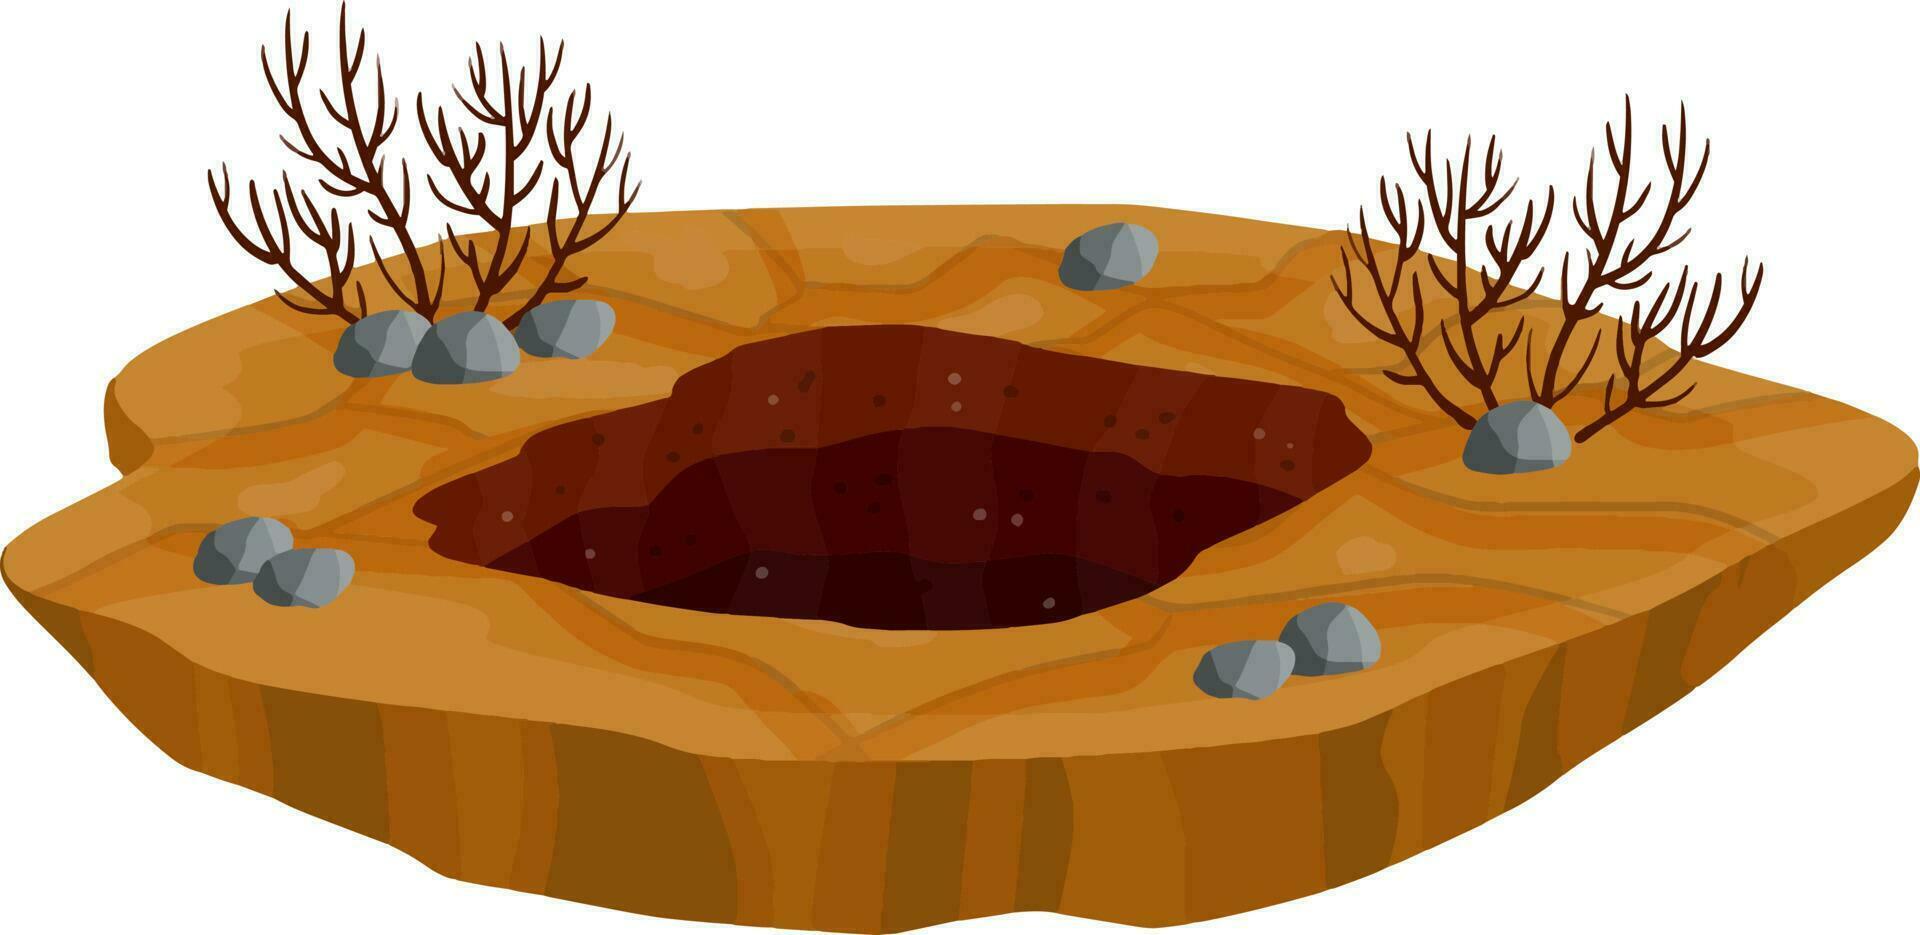 groot gat in de grond. bruine droge grond en de mijne. element van woestijnlandschap. cartoon illustratie vector